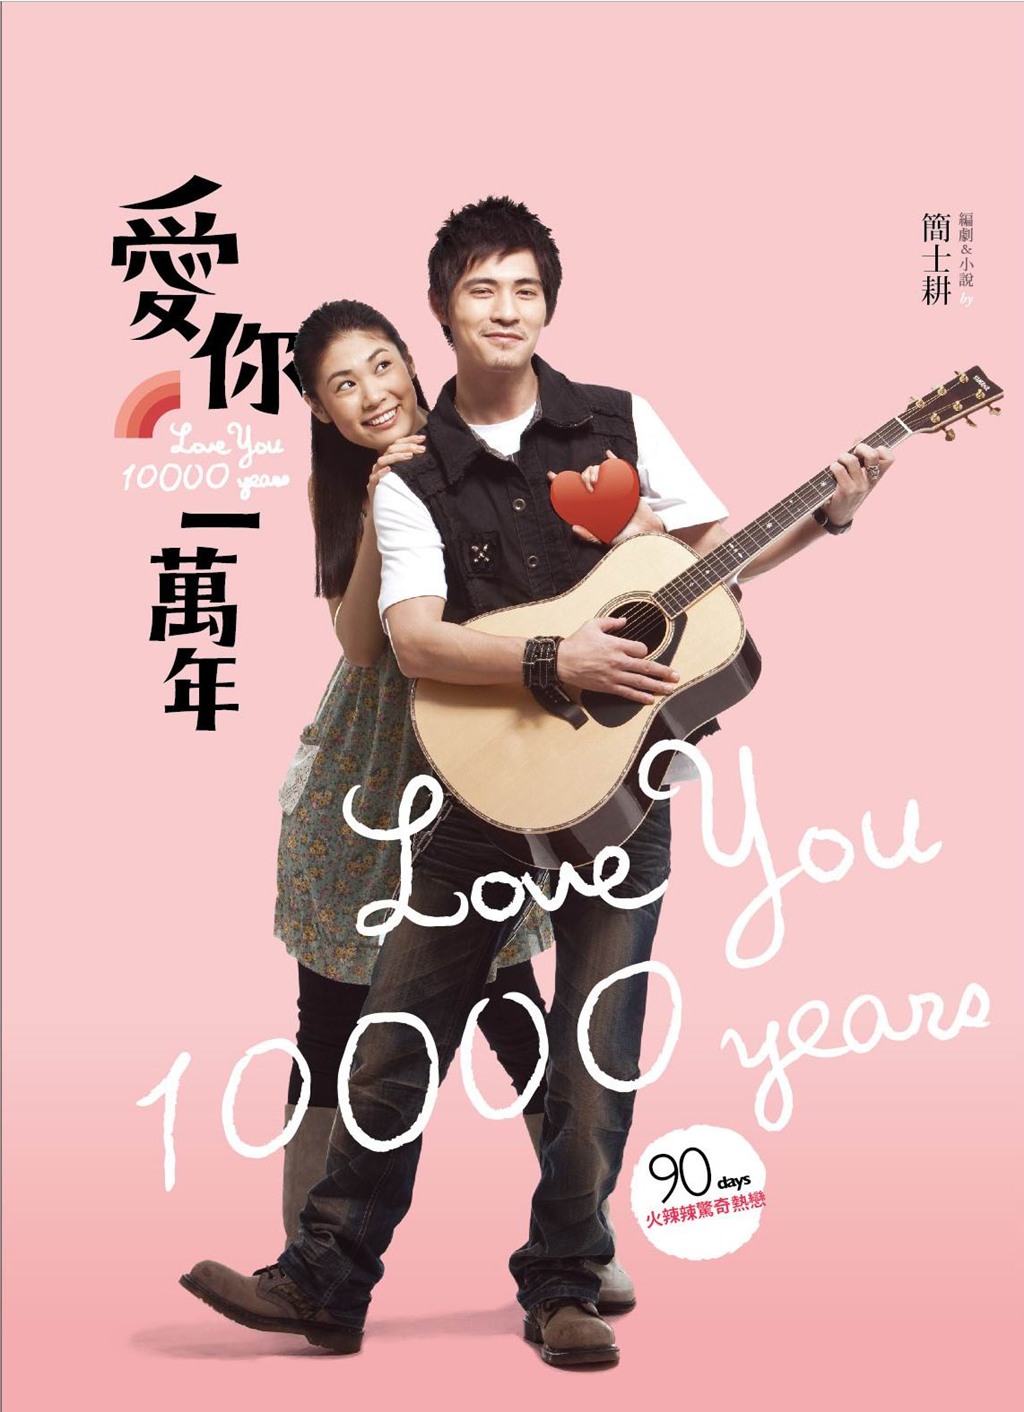 Ai ni yi wan nian (2010) with English Subtitles on DVD on DVD